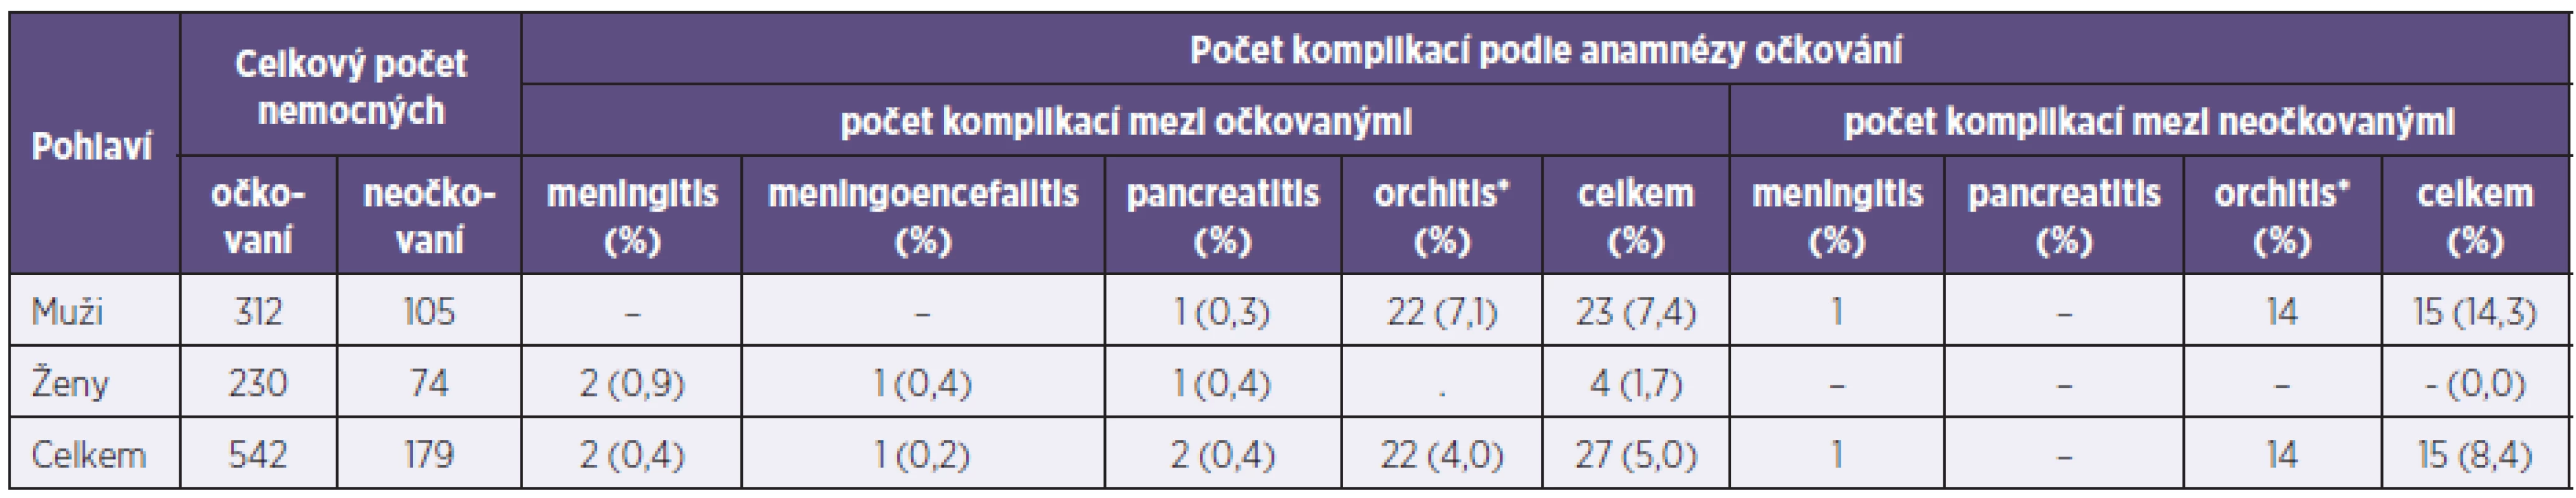 Výskyt komplikací u hlášených onemocnění příušnicemi (Plzeňský kraj, 2011)
Table 2. Complications in mumps cases (Plzeň Region, 2011)